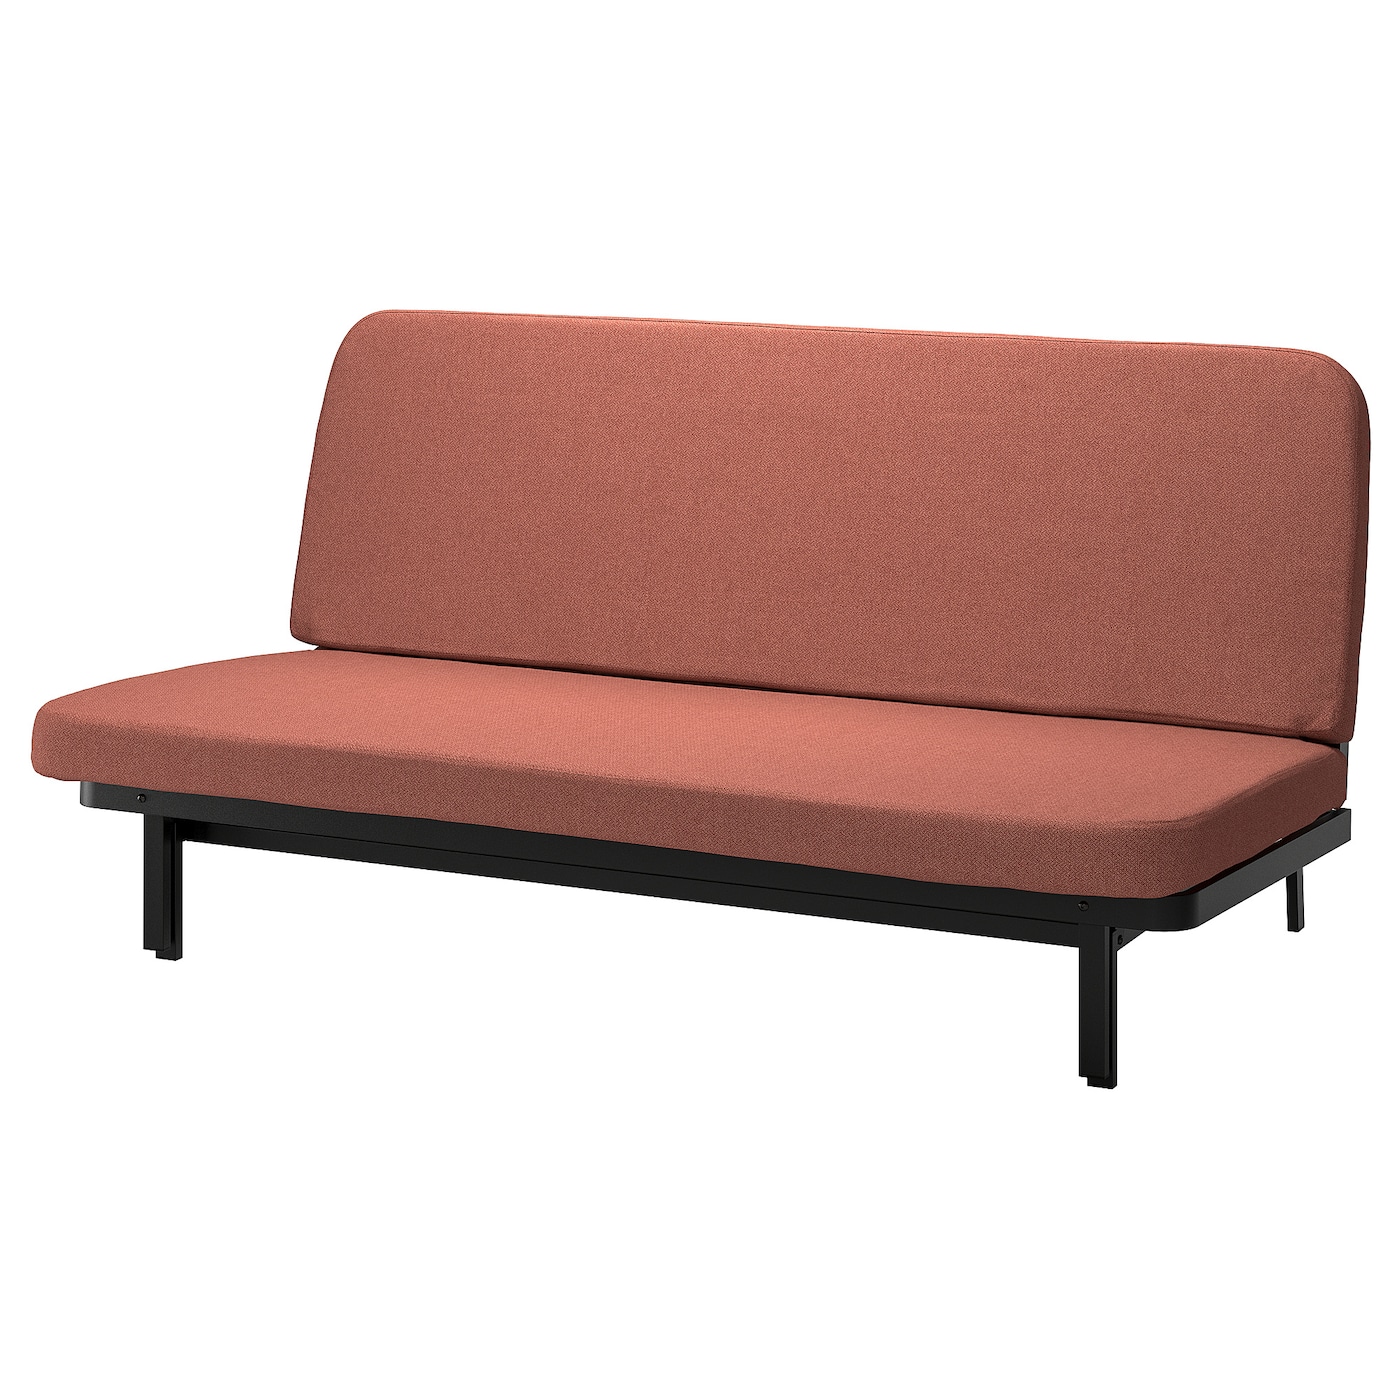 NYHAMN 3-местный диван-кровать, поролоновый матрас в комплекте/Скартофта красный/коричневый IKEA домашний одноместный диван кровать спинка стул для спальни односпальный диван для девушек удобное эркерное окно маленький диван складн